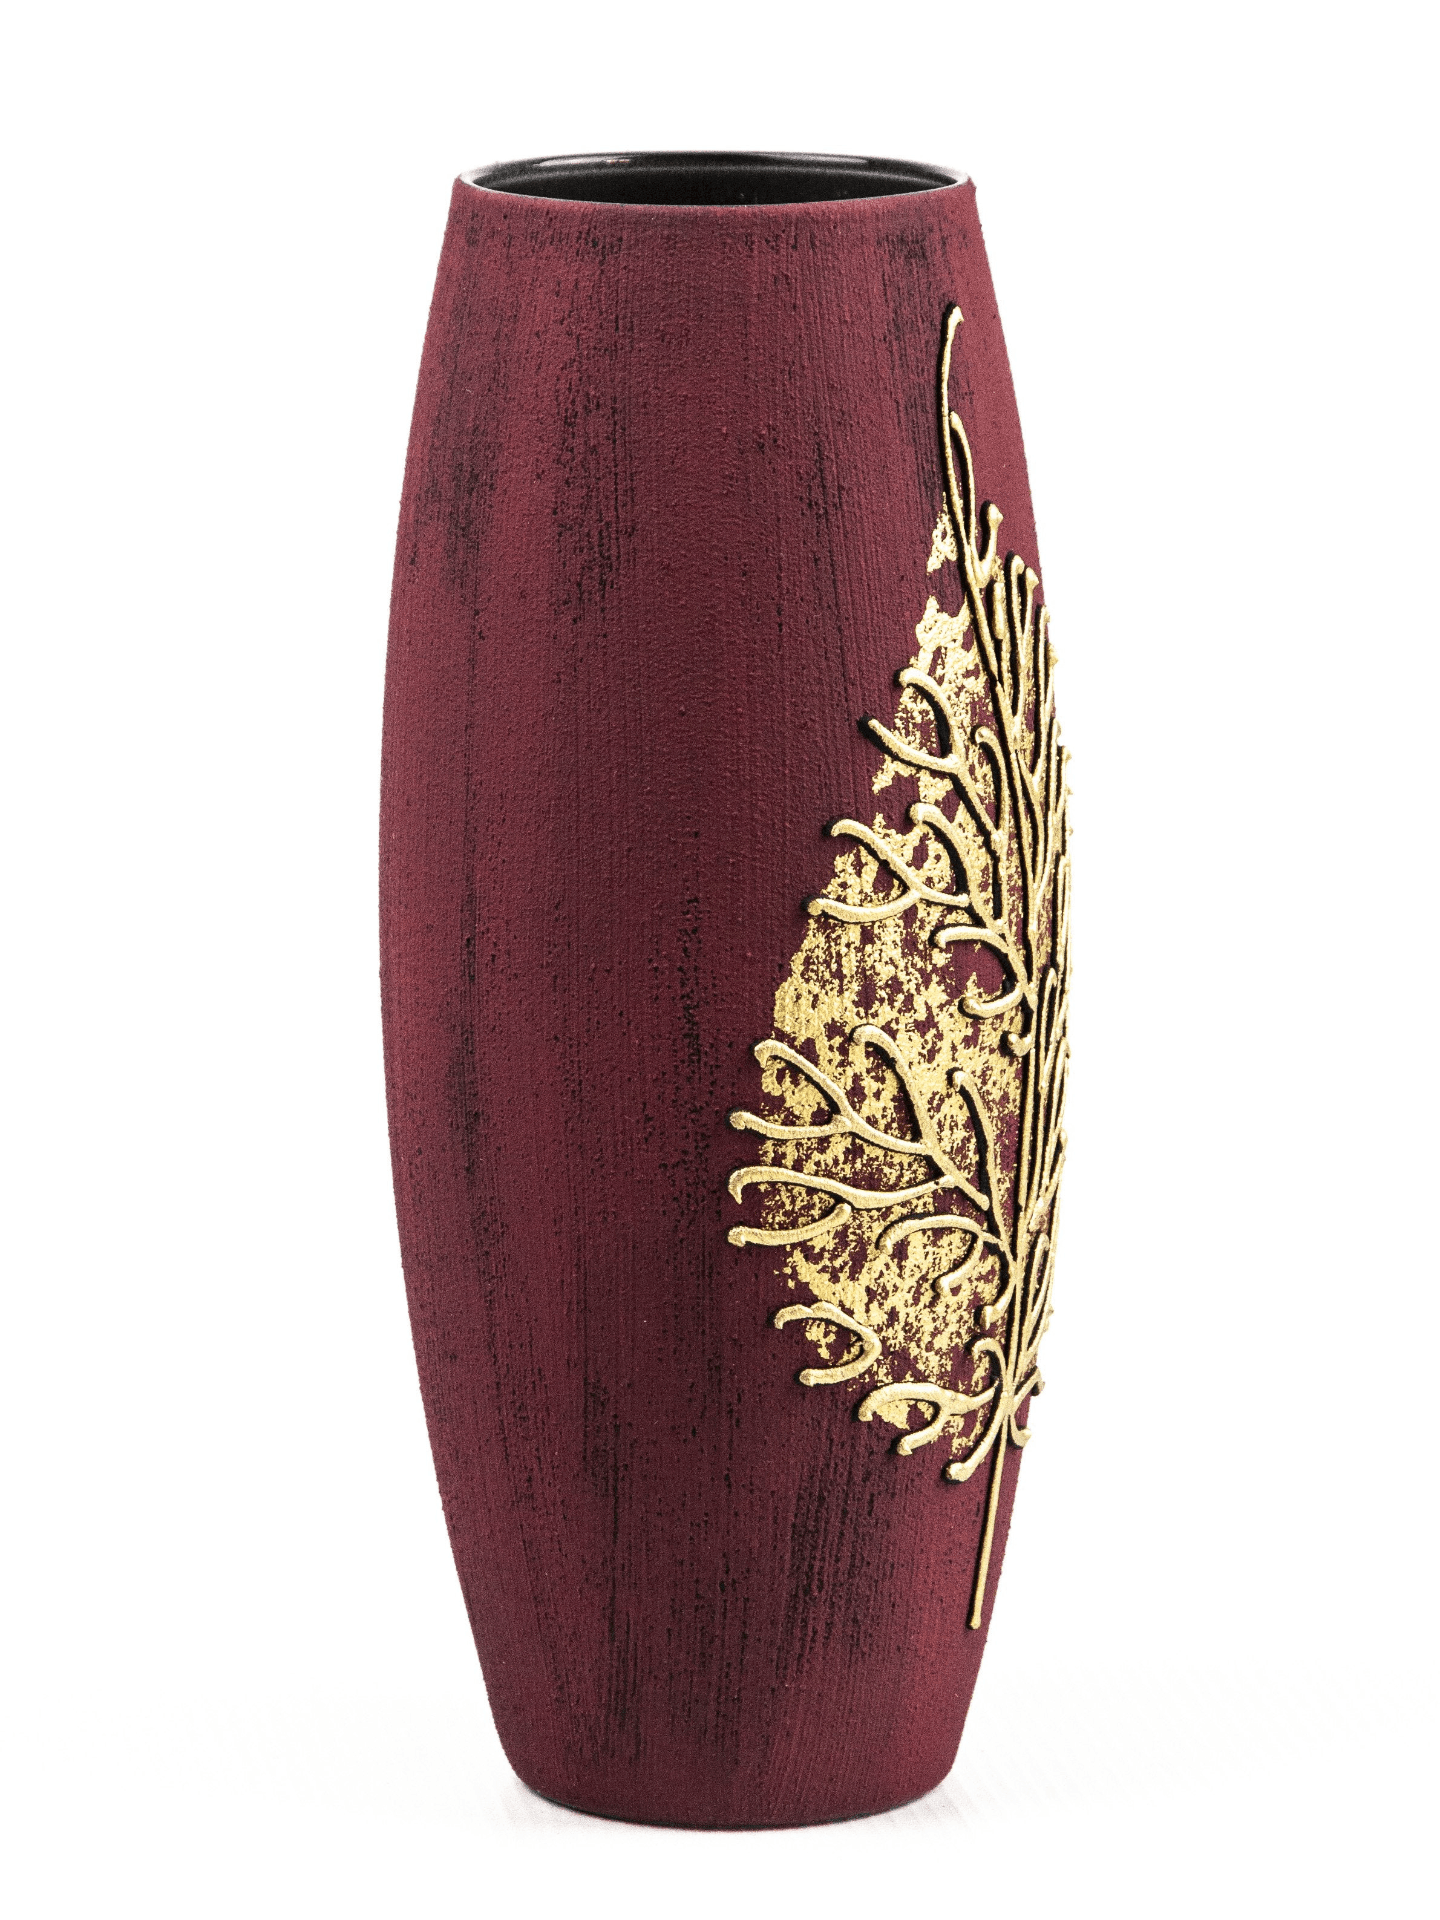 Gold on Burgundy Handpainted Art Glass Oval Vase for Flowers | Interior Design | Home Decor | Table vase | 7736/250/sh161.6  